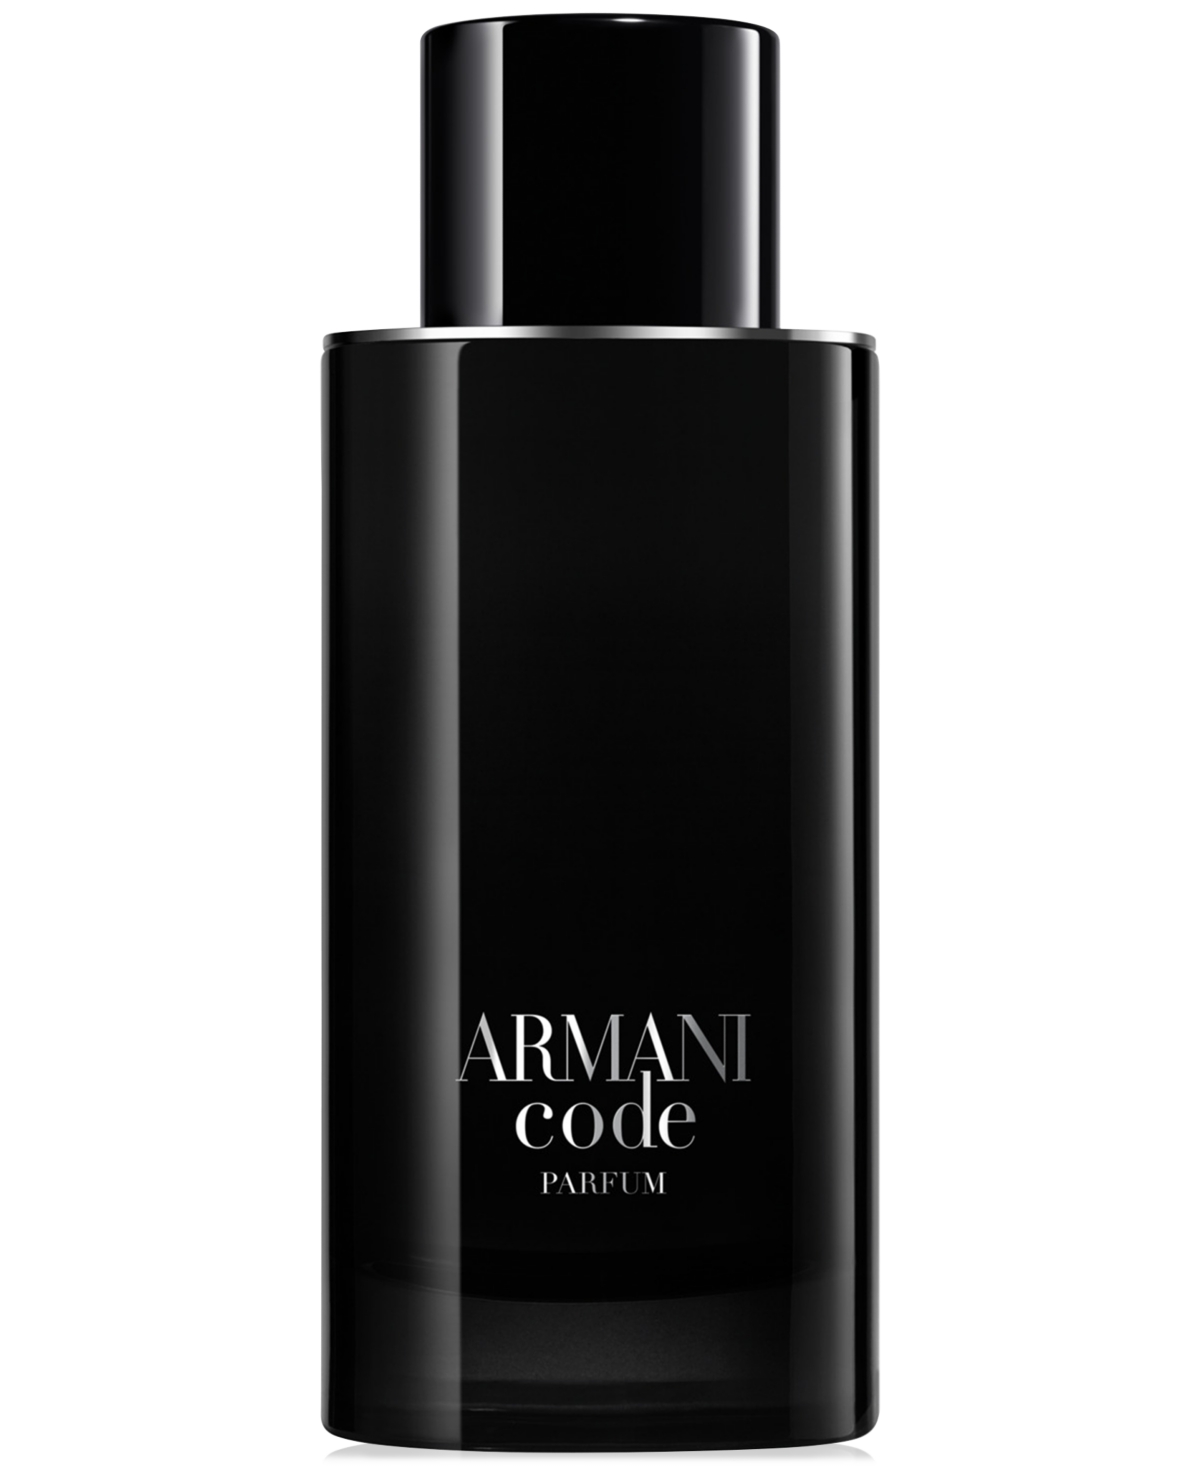 Giorgio Armani Armani Beauty Men's Armani Code Parfum, 4.2 Oz. In No Color